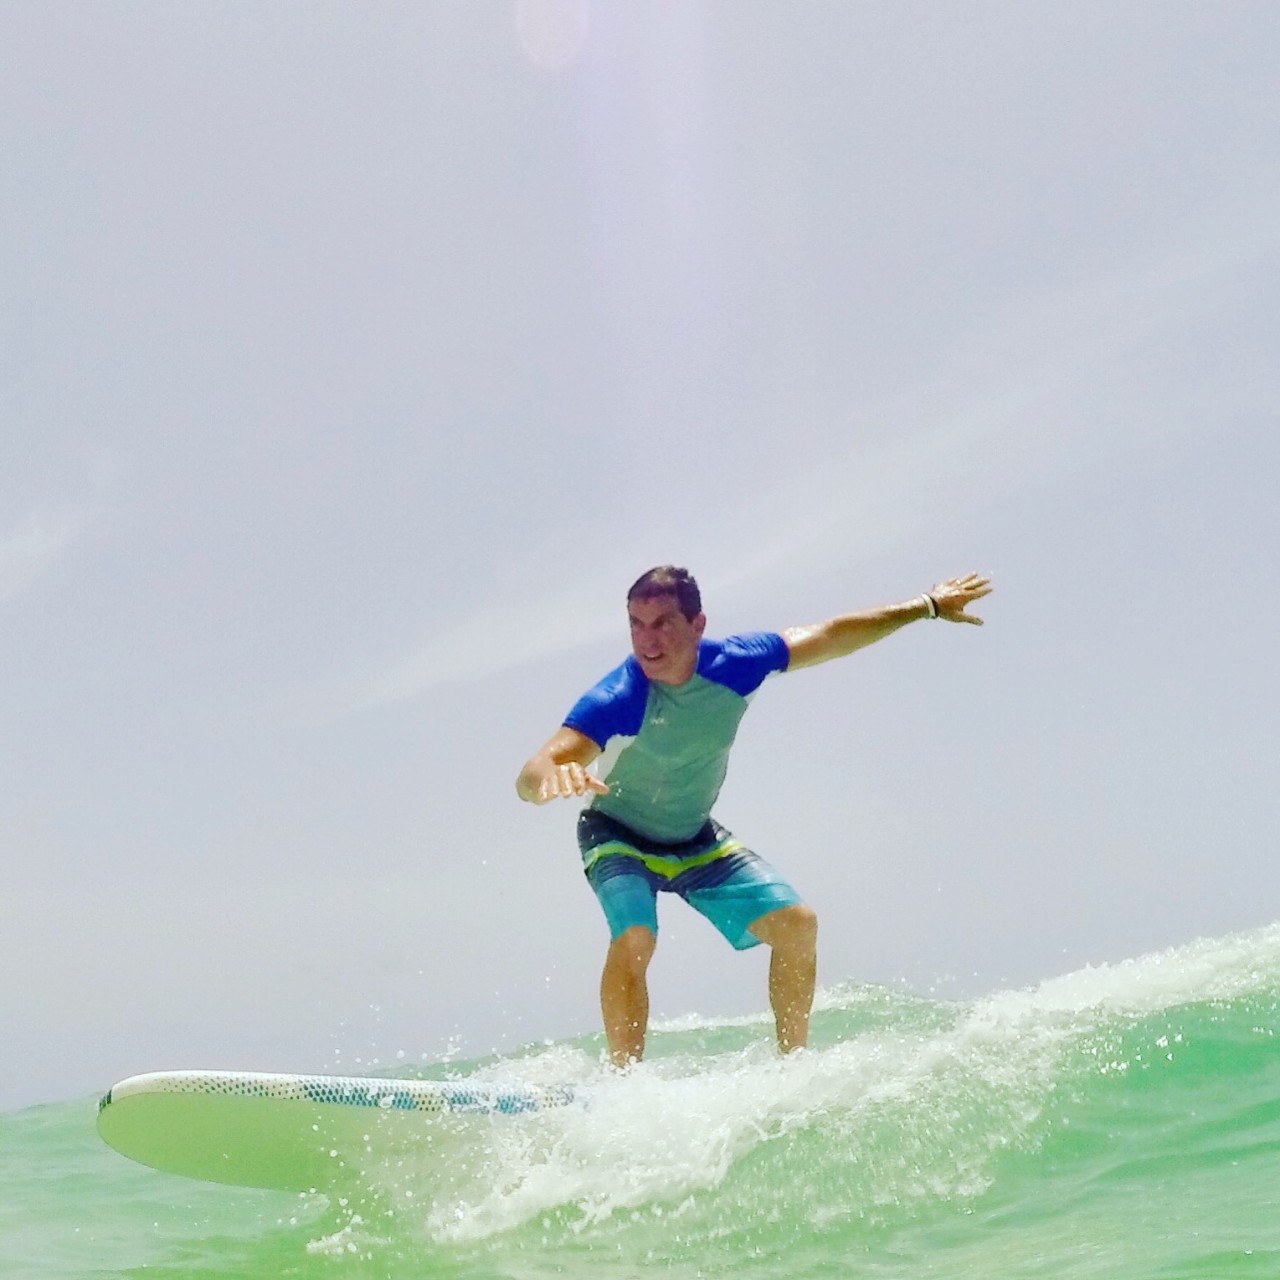 Mark B. surfing